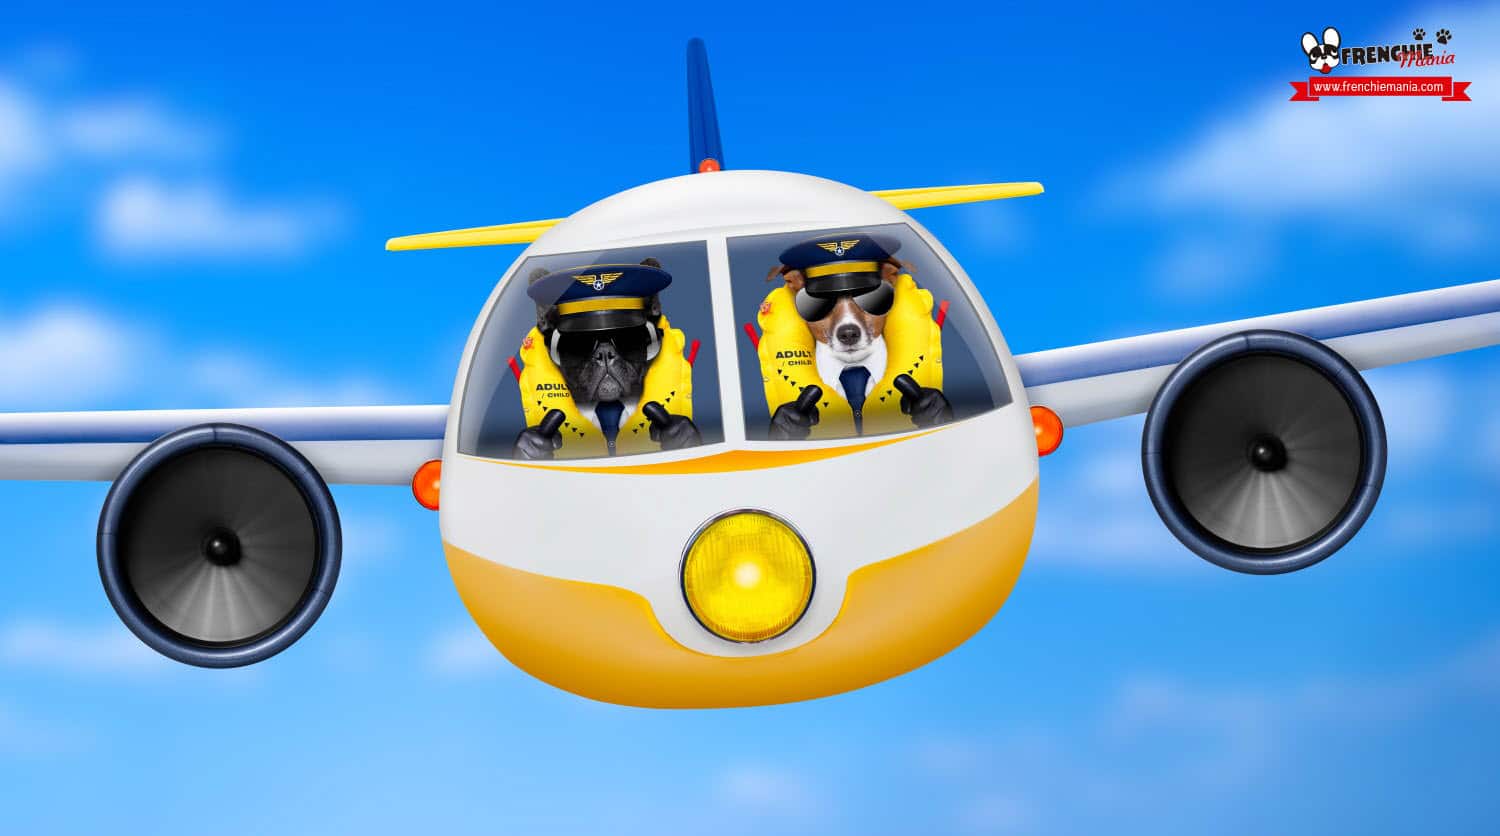 guía como viajar con perro en avion informacion compañia aerea